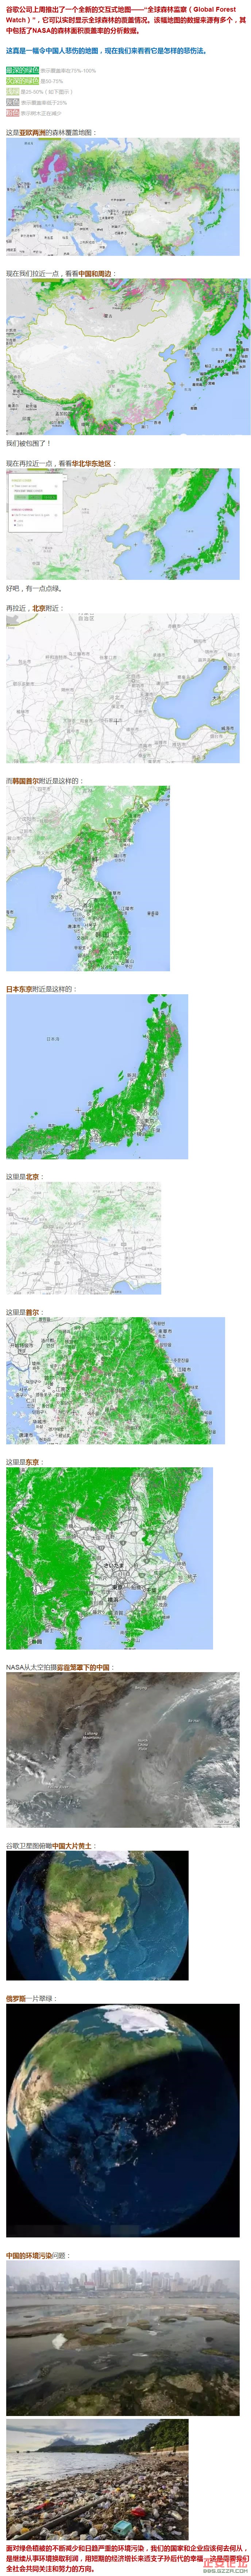 一幅不堪入目的中国地图.jpg